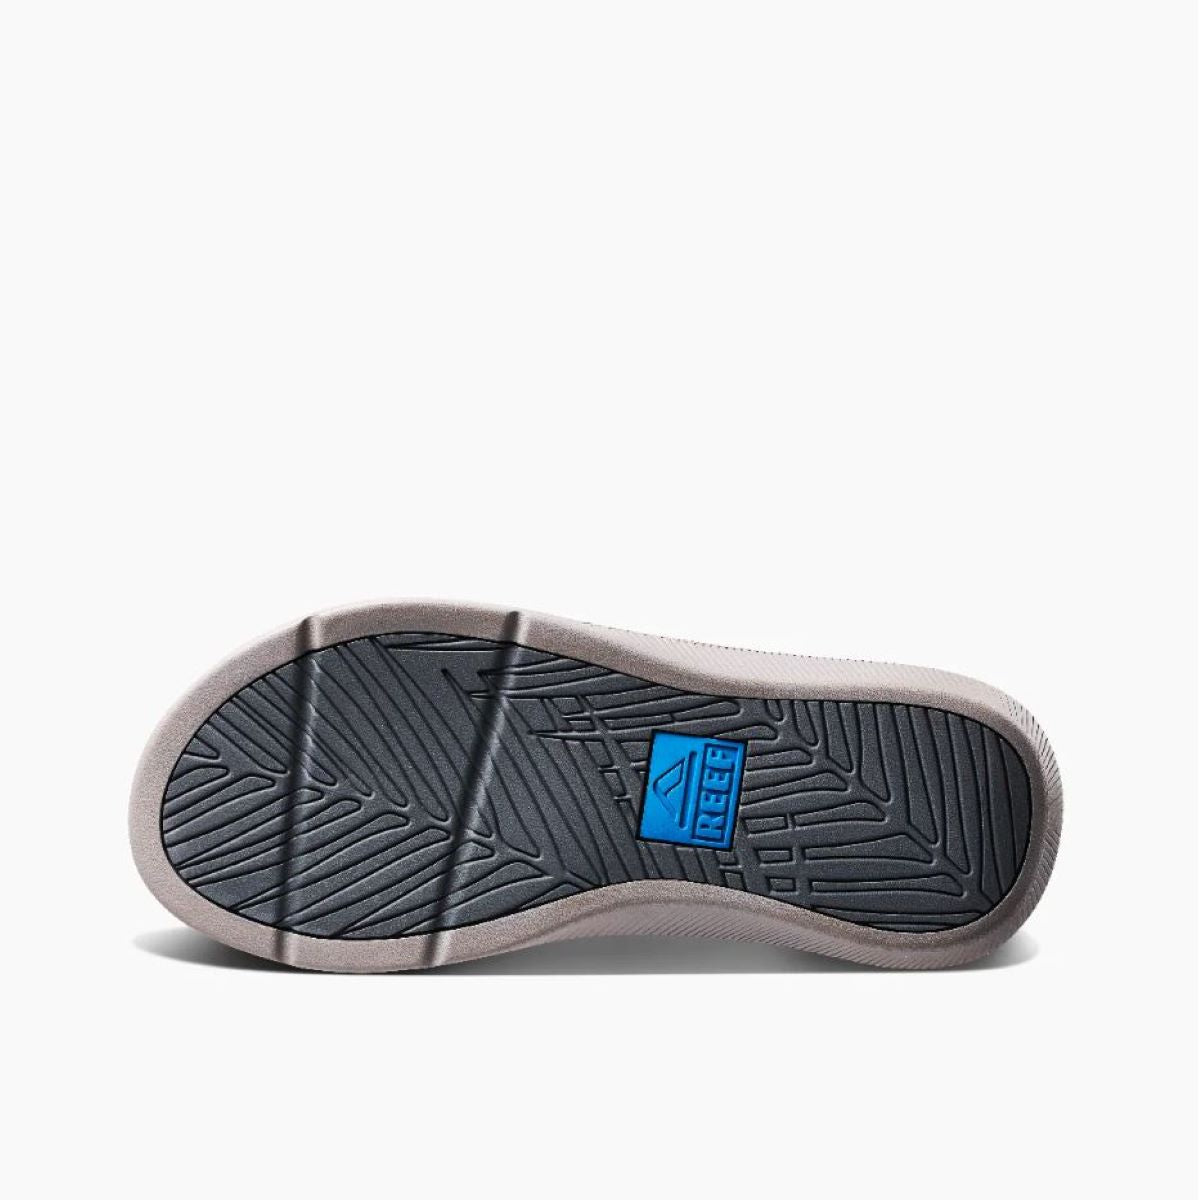 Reef Santa Ana Men's Sandal in Blue/Light Grey - BoardCo